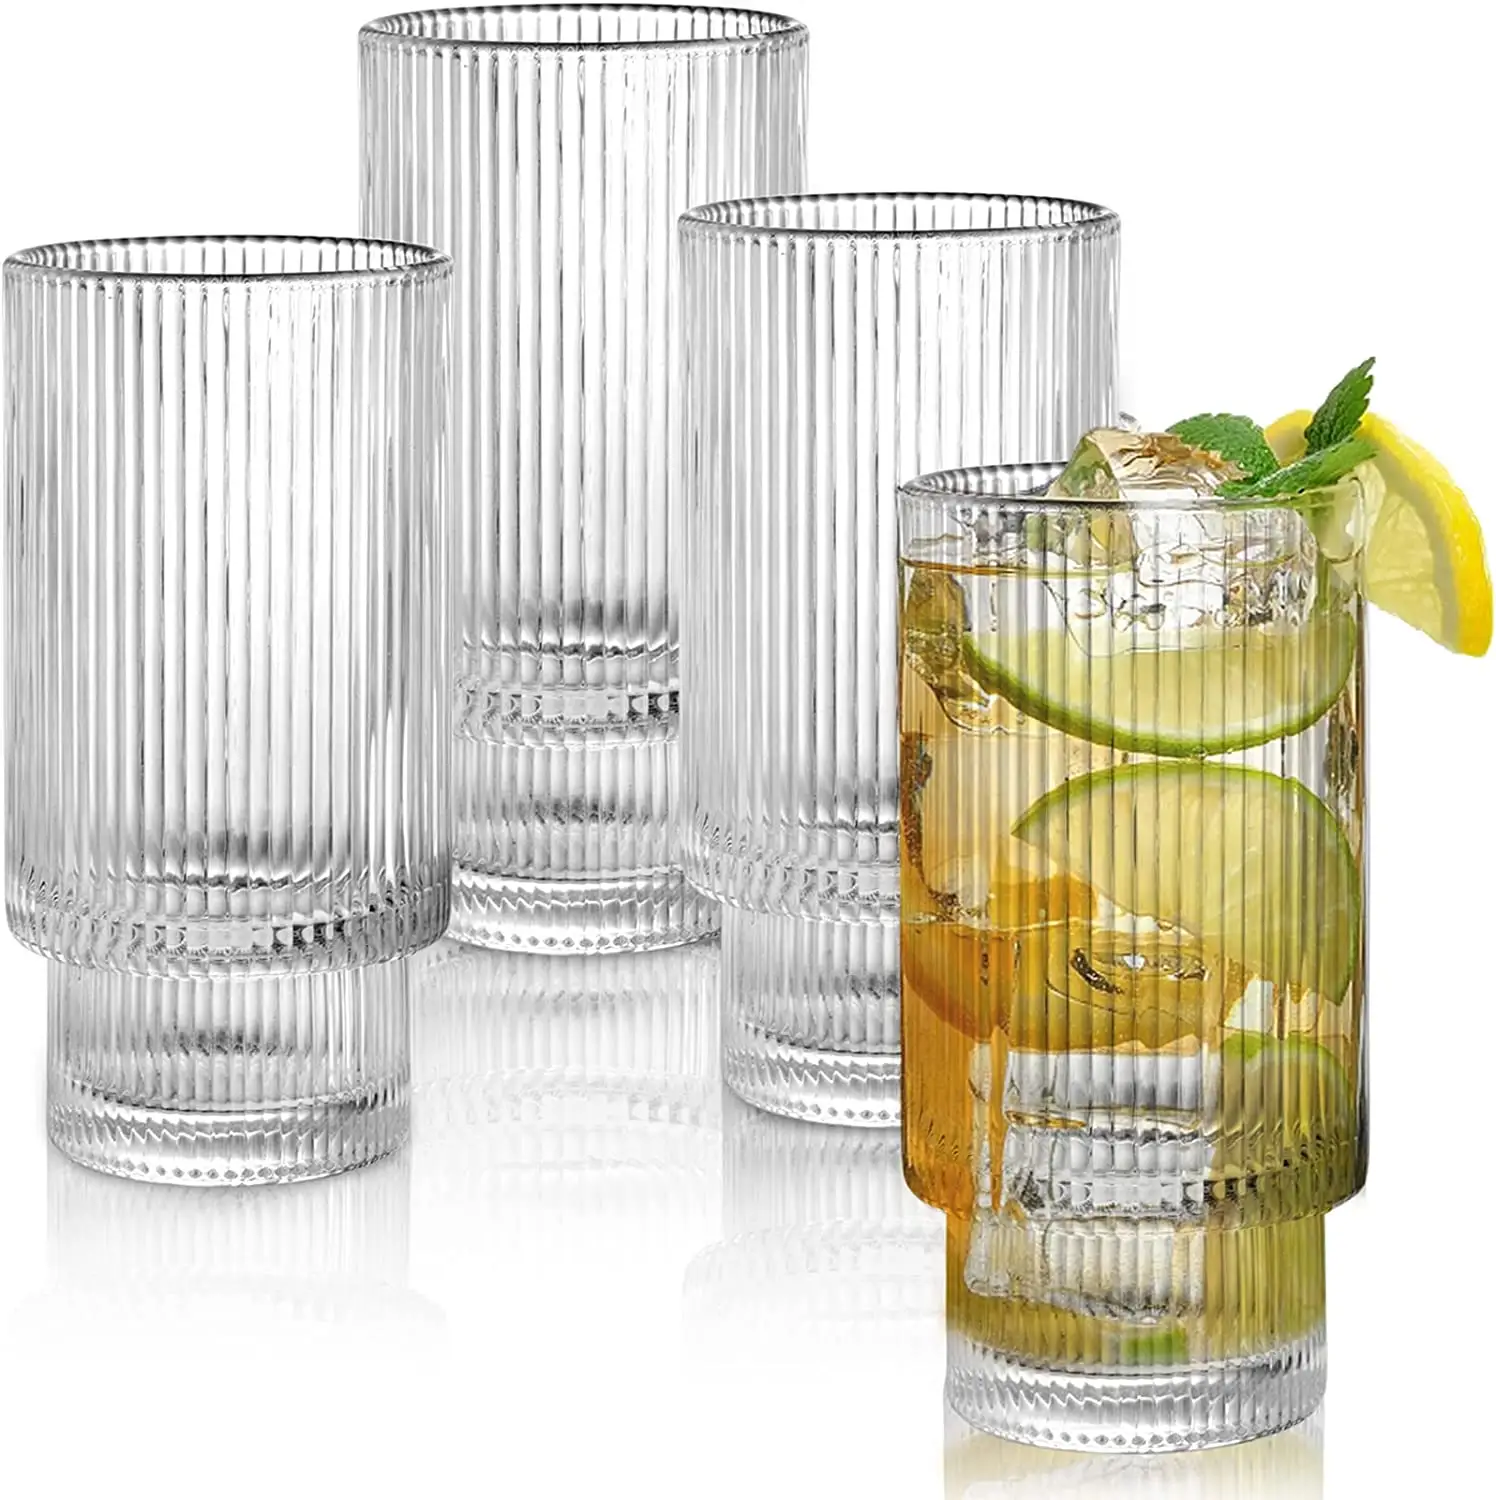 Verres à boire grands transparents de 10 oz pour cocktail, jus, verrerie nervurée, verre à eau épais en cristal avec base lourde pour boisson